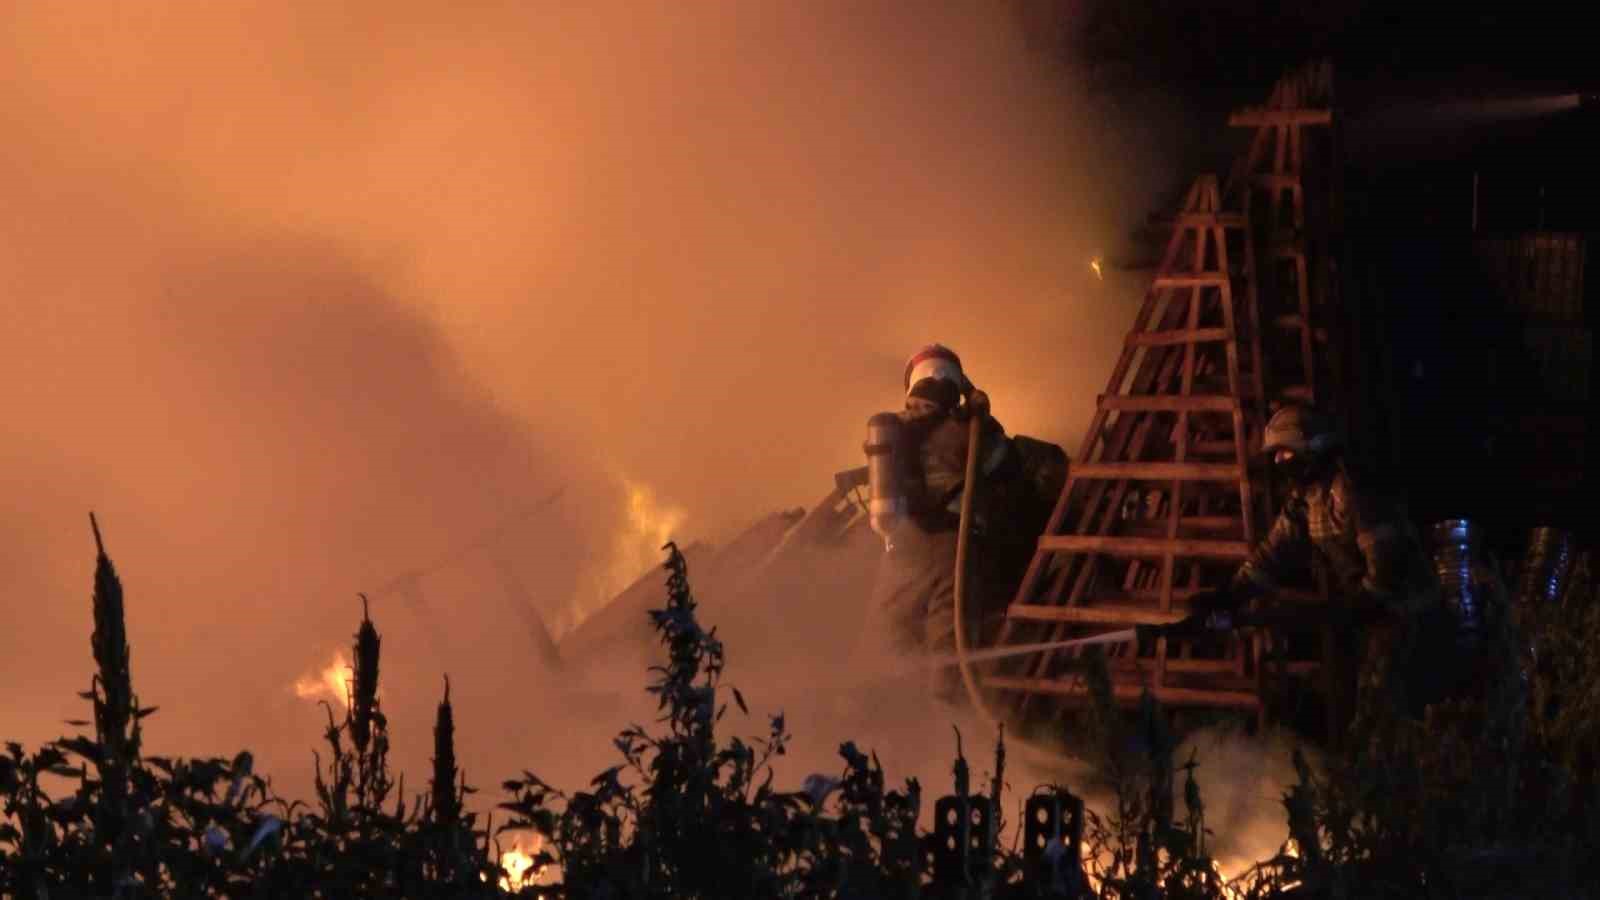 Bursa’da soğuk hava deposunda çıkan yangında alevler geceyi aydınlattı